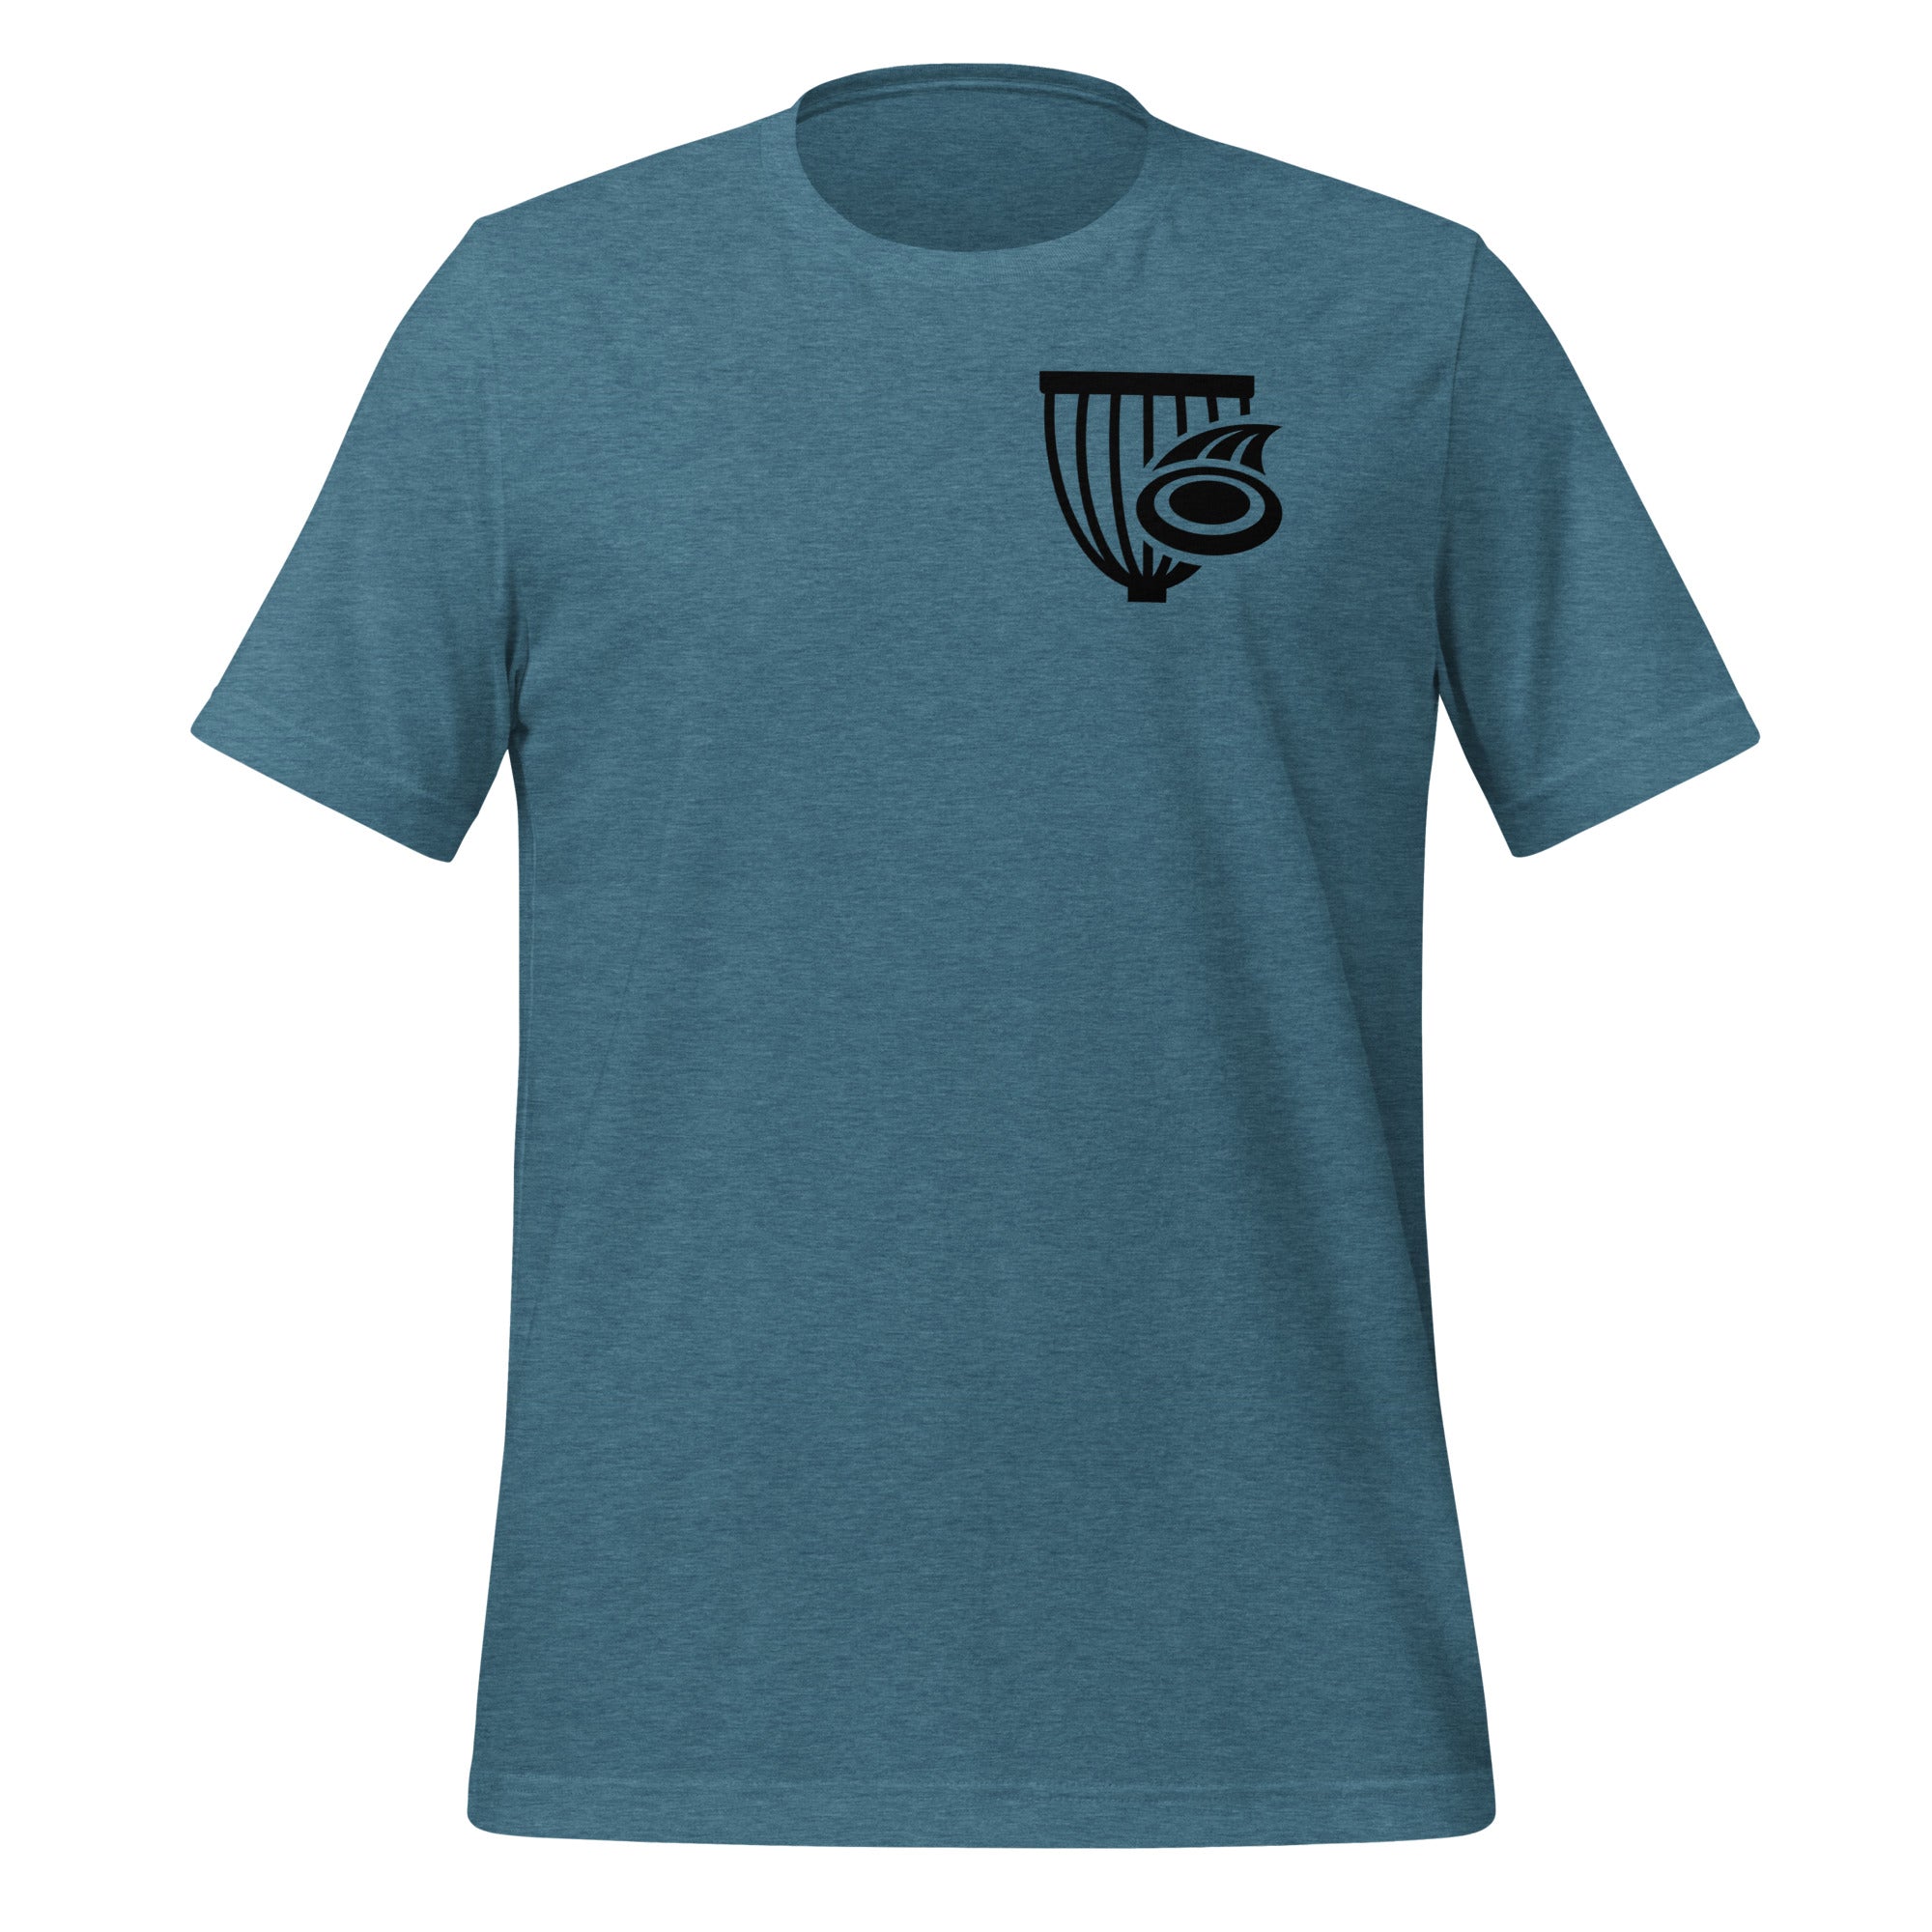 The Disc Depot Short Sleeve Unisex t-shirt